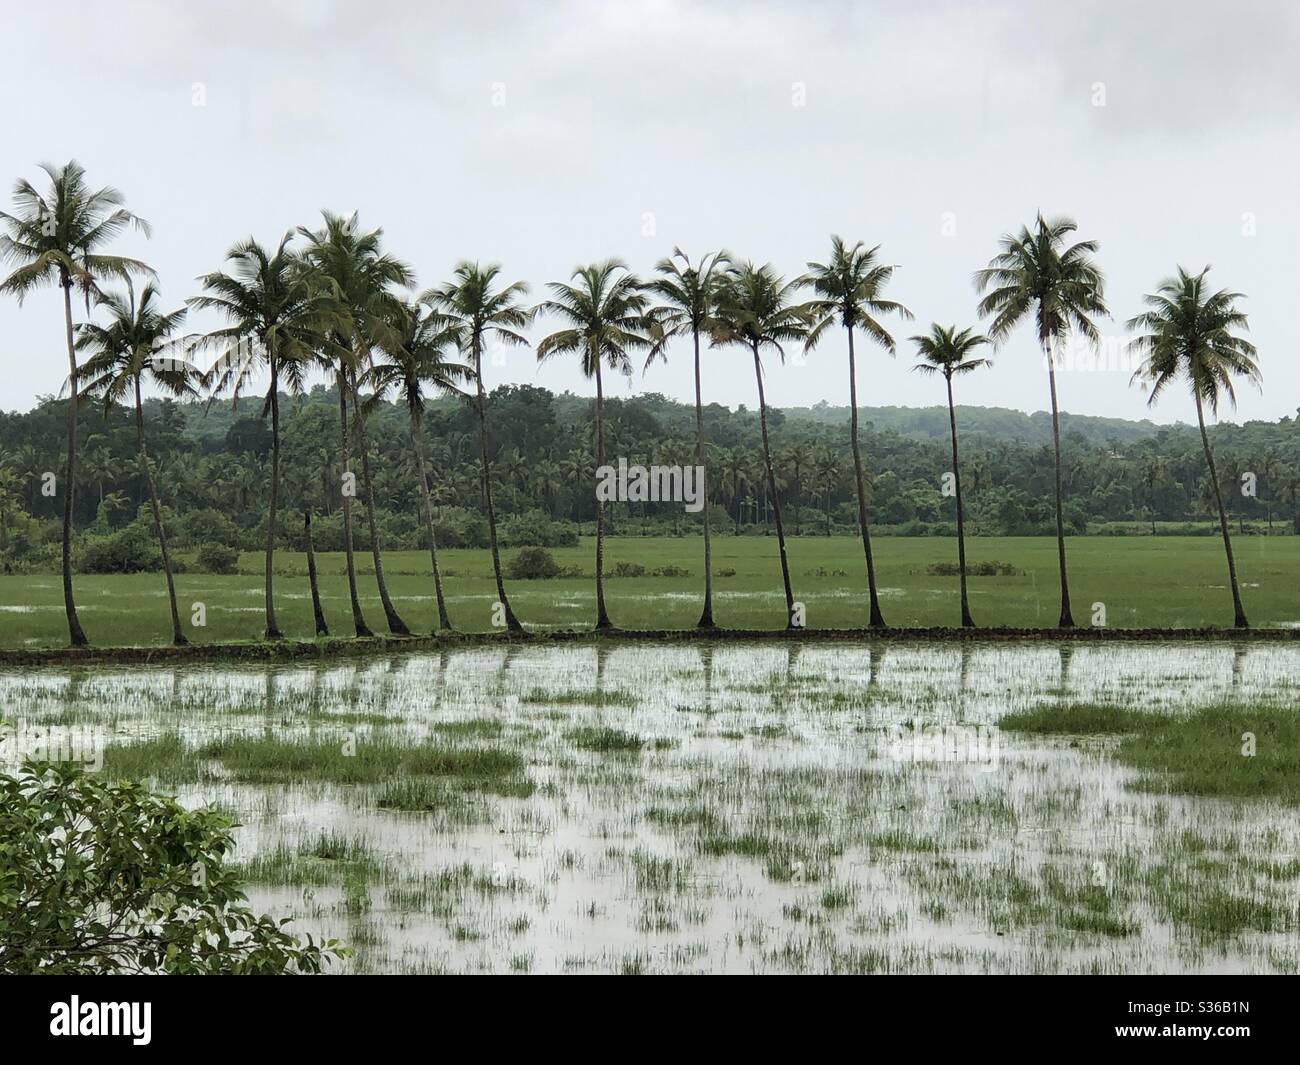 Une rangée de palmiers à noix de coco au milieu des rizières inondées à Arambol, Goa, Inde. Goa a été dirigé par le Portugal pendant 451 ans, et jusqu'en 1961. 18 mai 2020. Banque D'Images